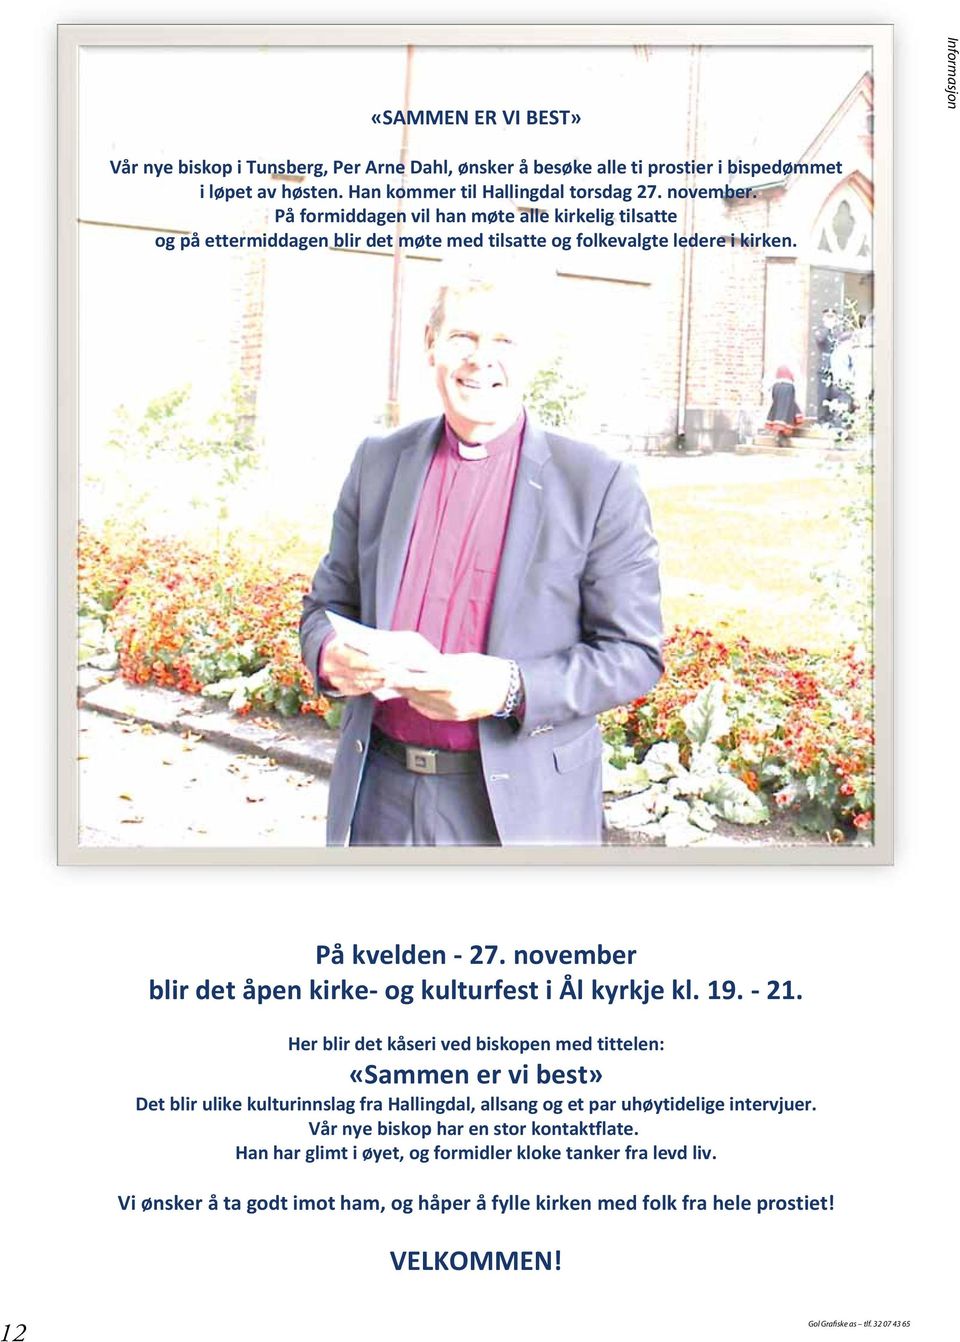 november blir det åpen kirke- og kulturfest i Ål kyrkje kl. 19. - 21.